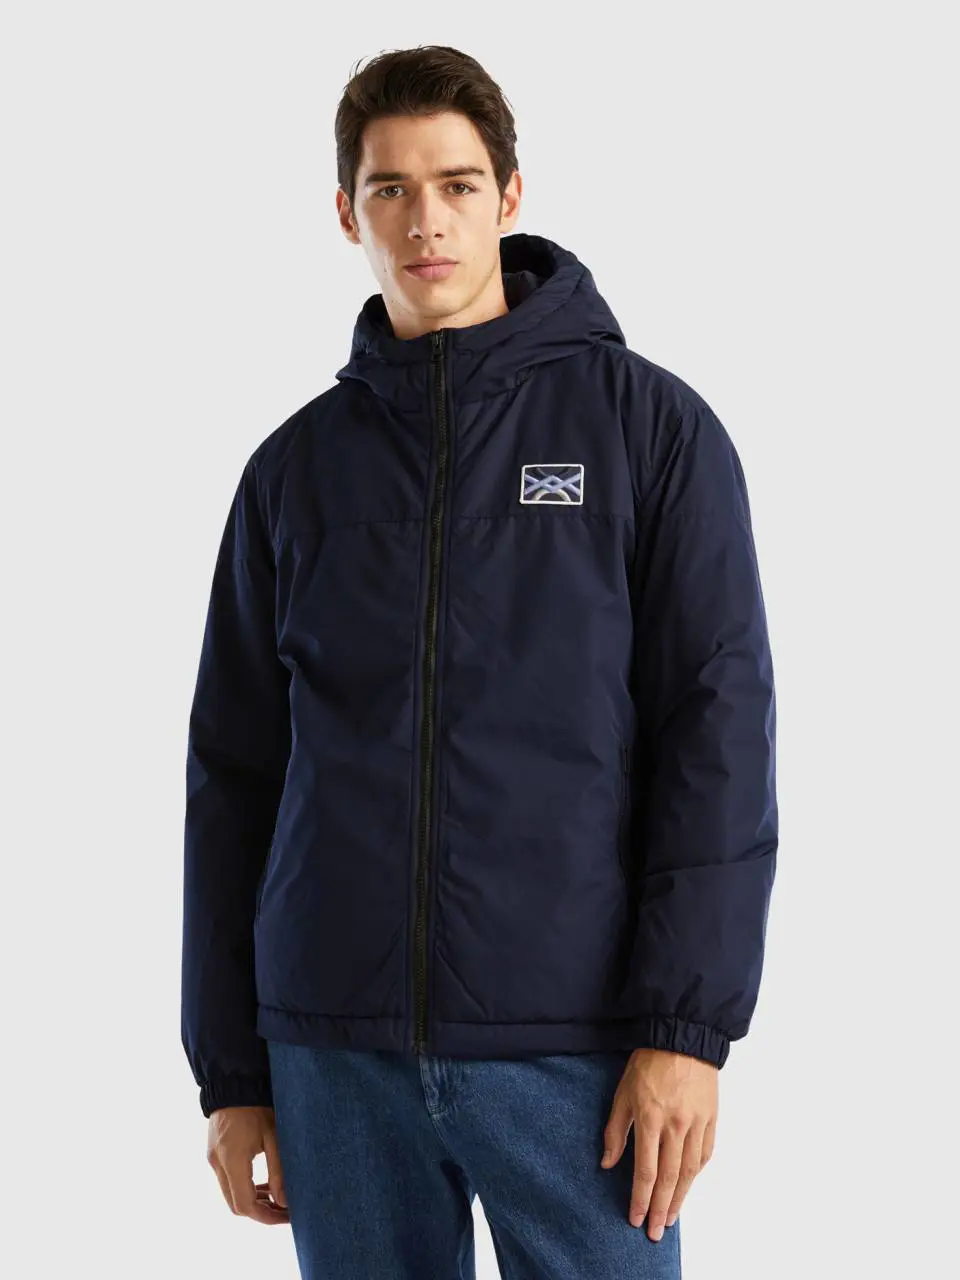 Benetton "rain defender" hooded jacket. 1